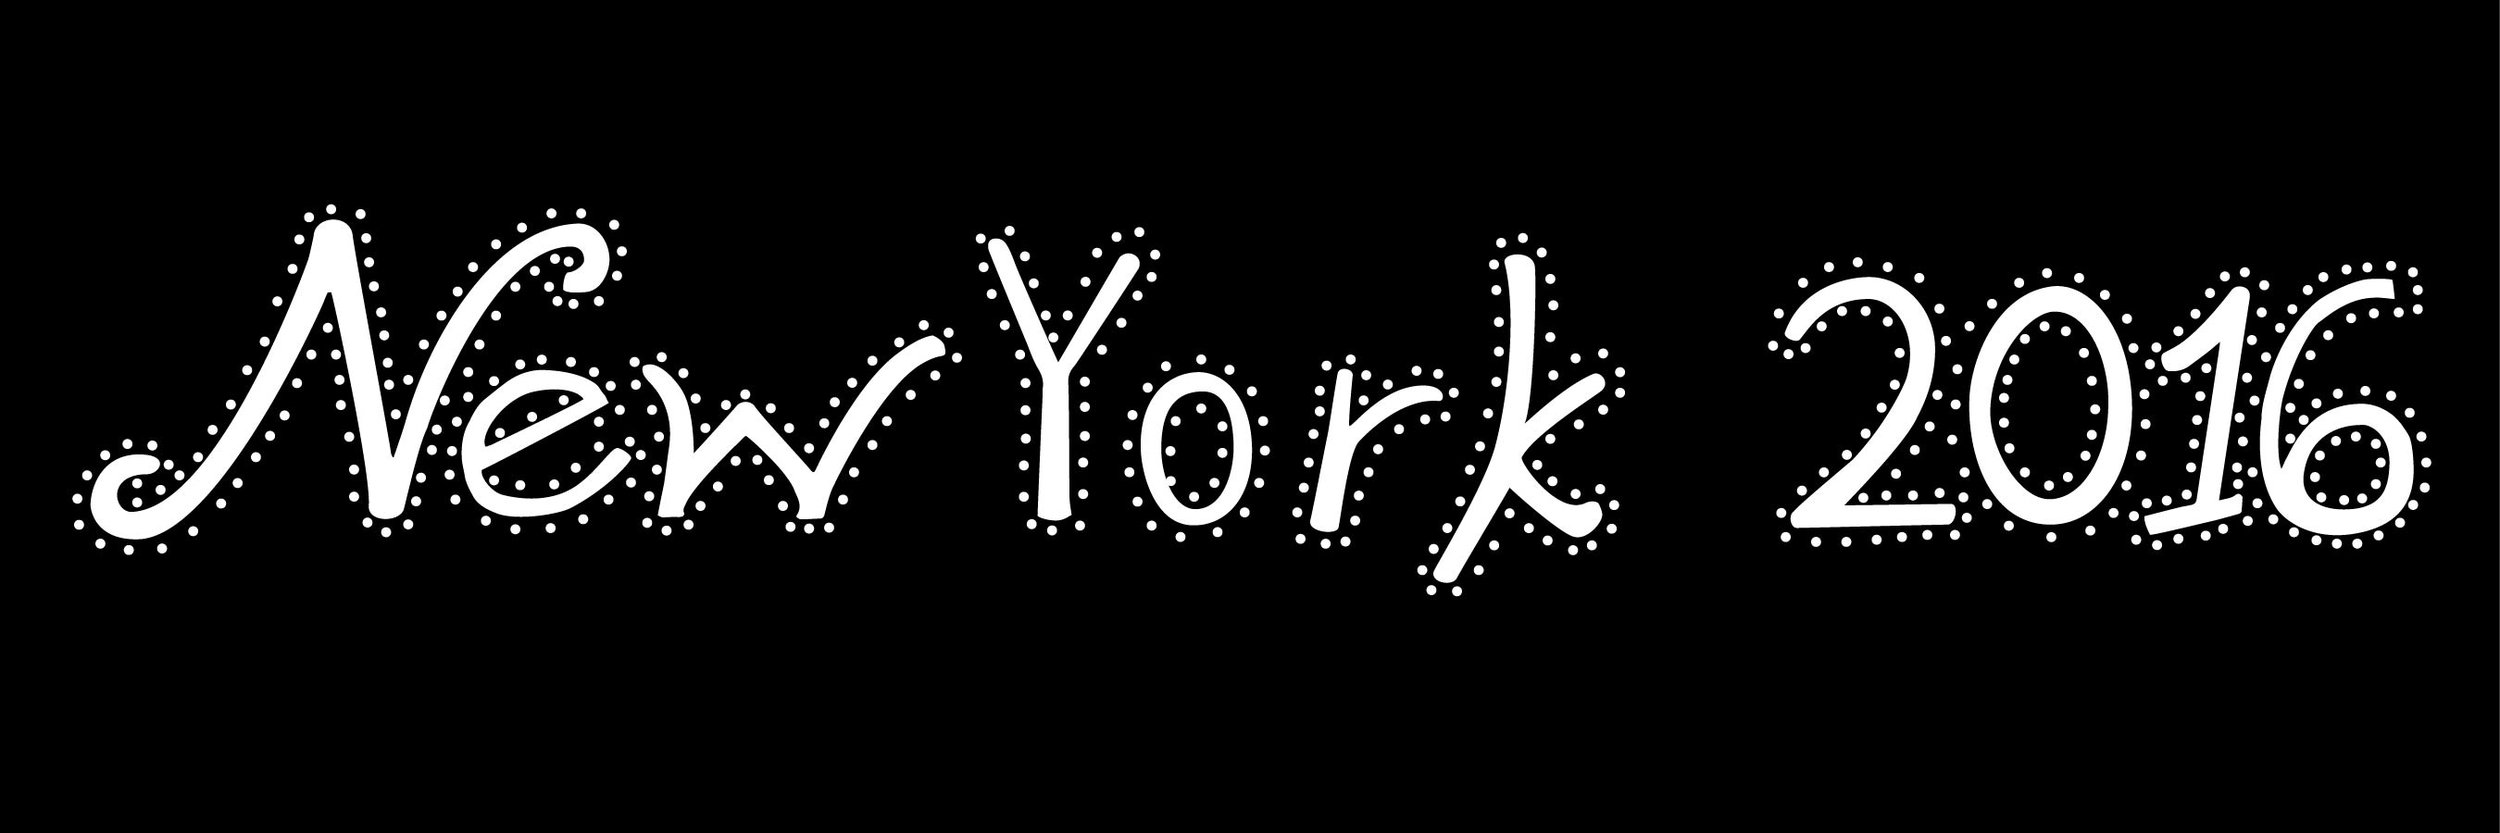 New York lettering-01.jpg